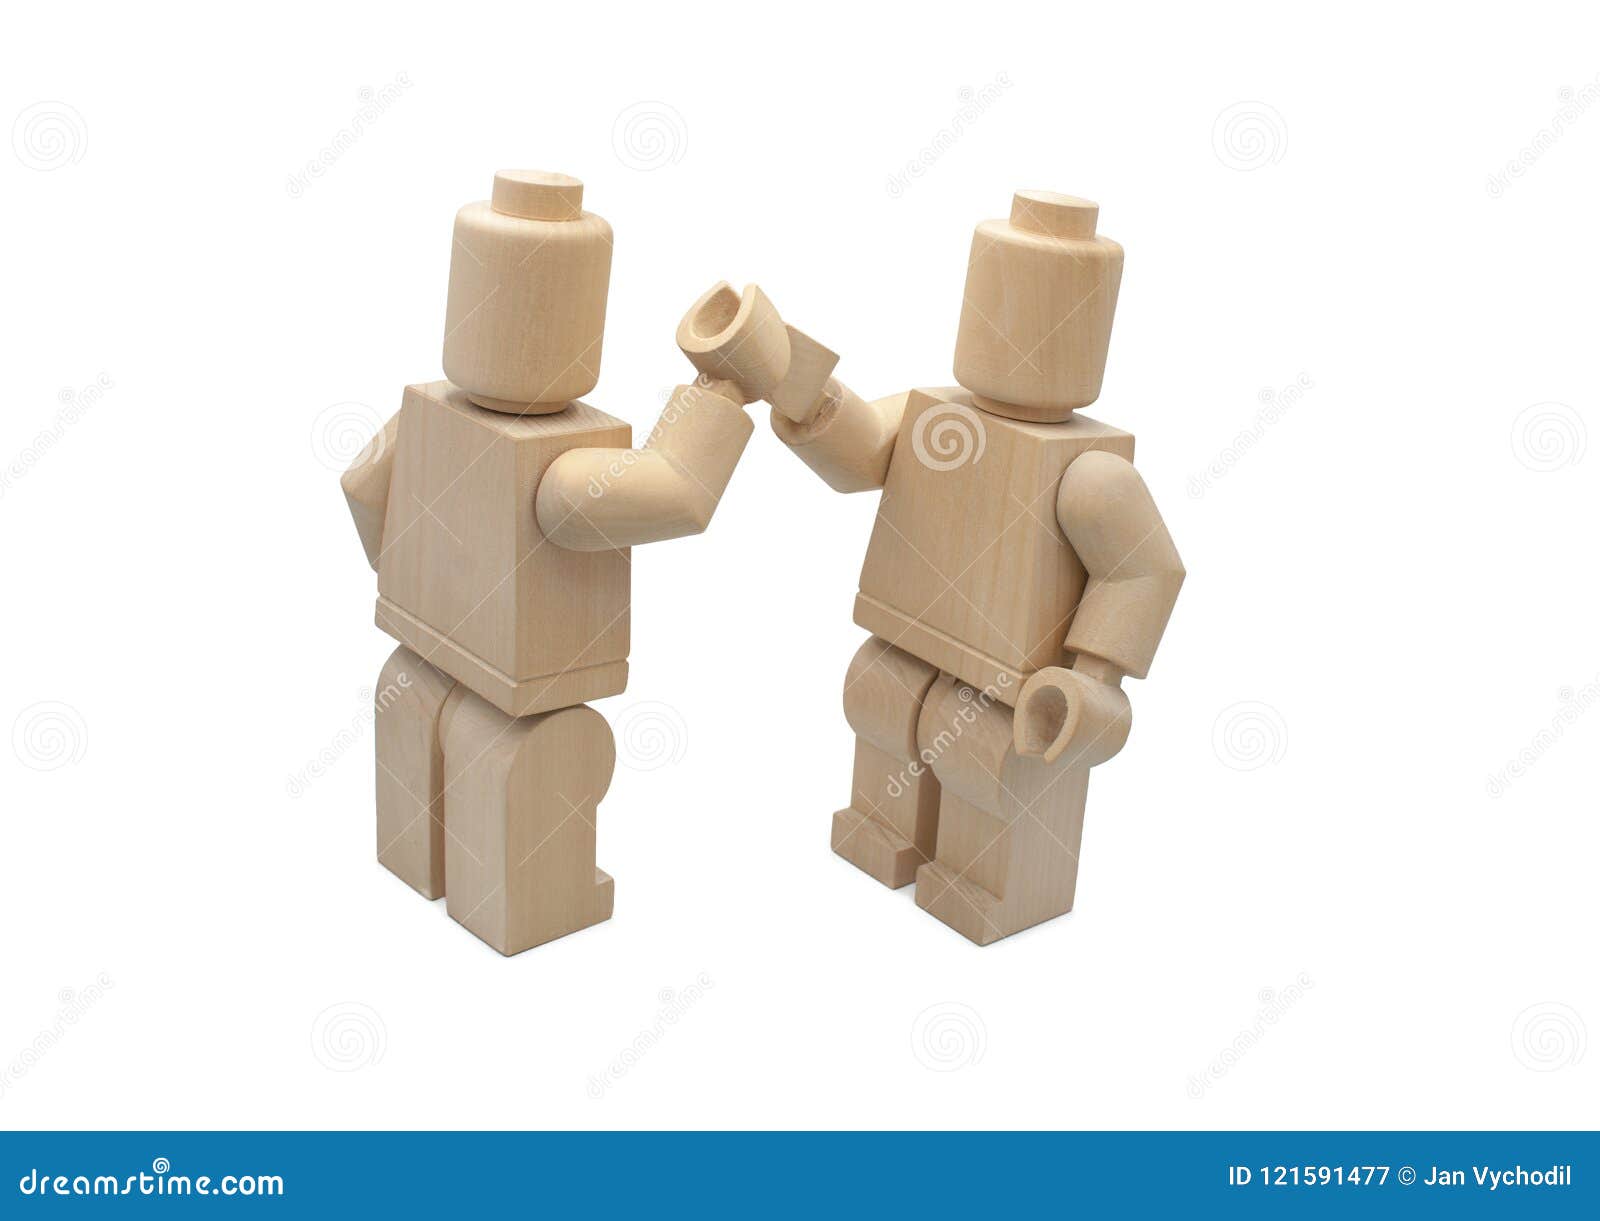 træk uld over øjnene Gøre husarbejde Fremkald Wooden Lego Figures. High Five Editorial Photography - Image of lego,  wooden: 121591477